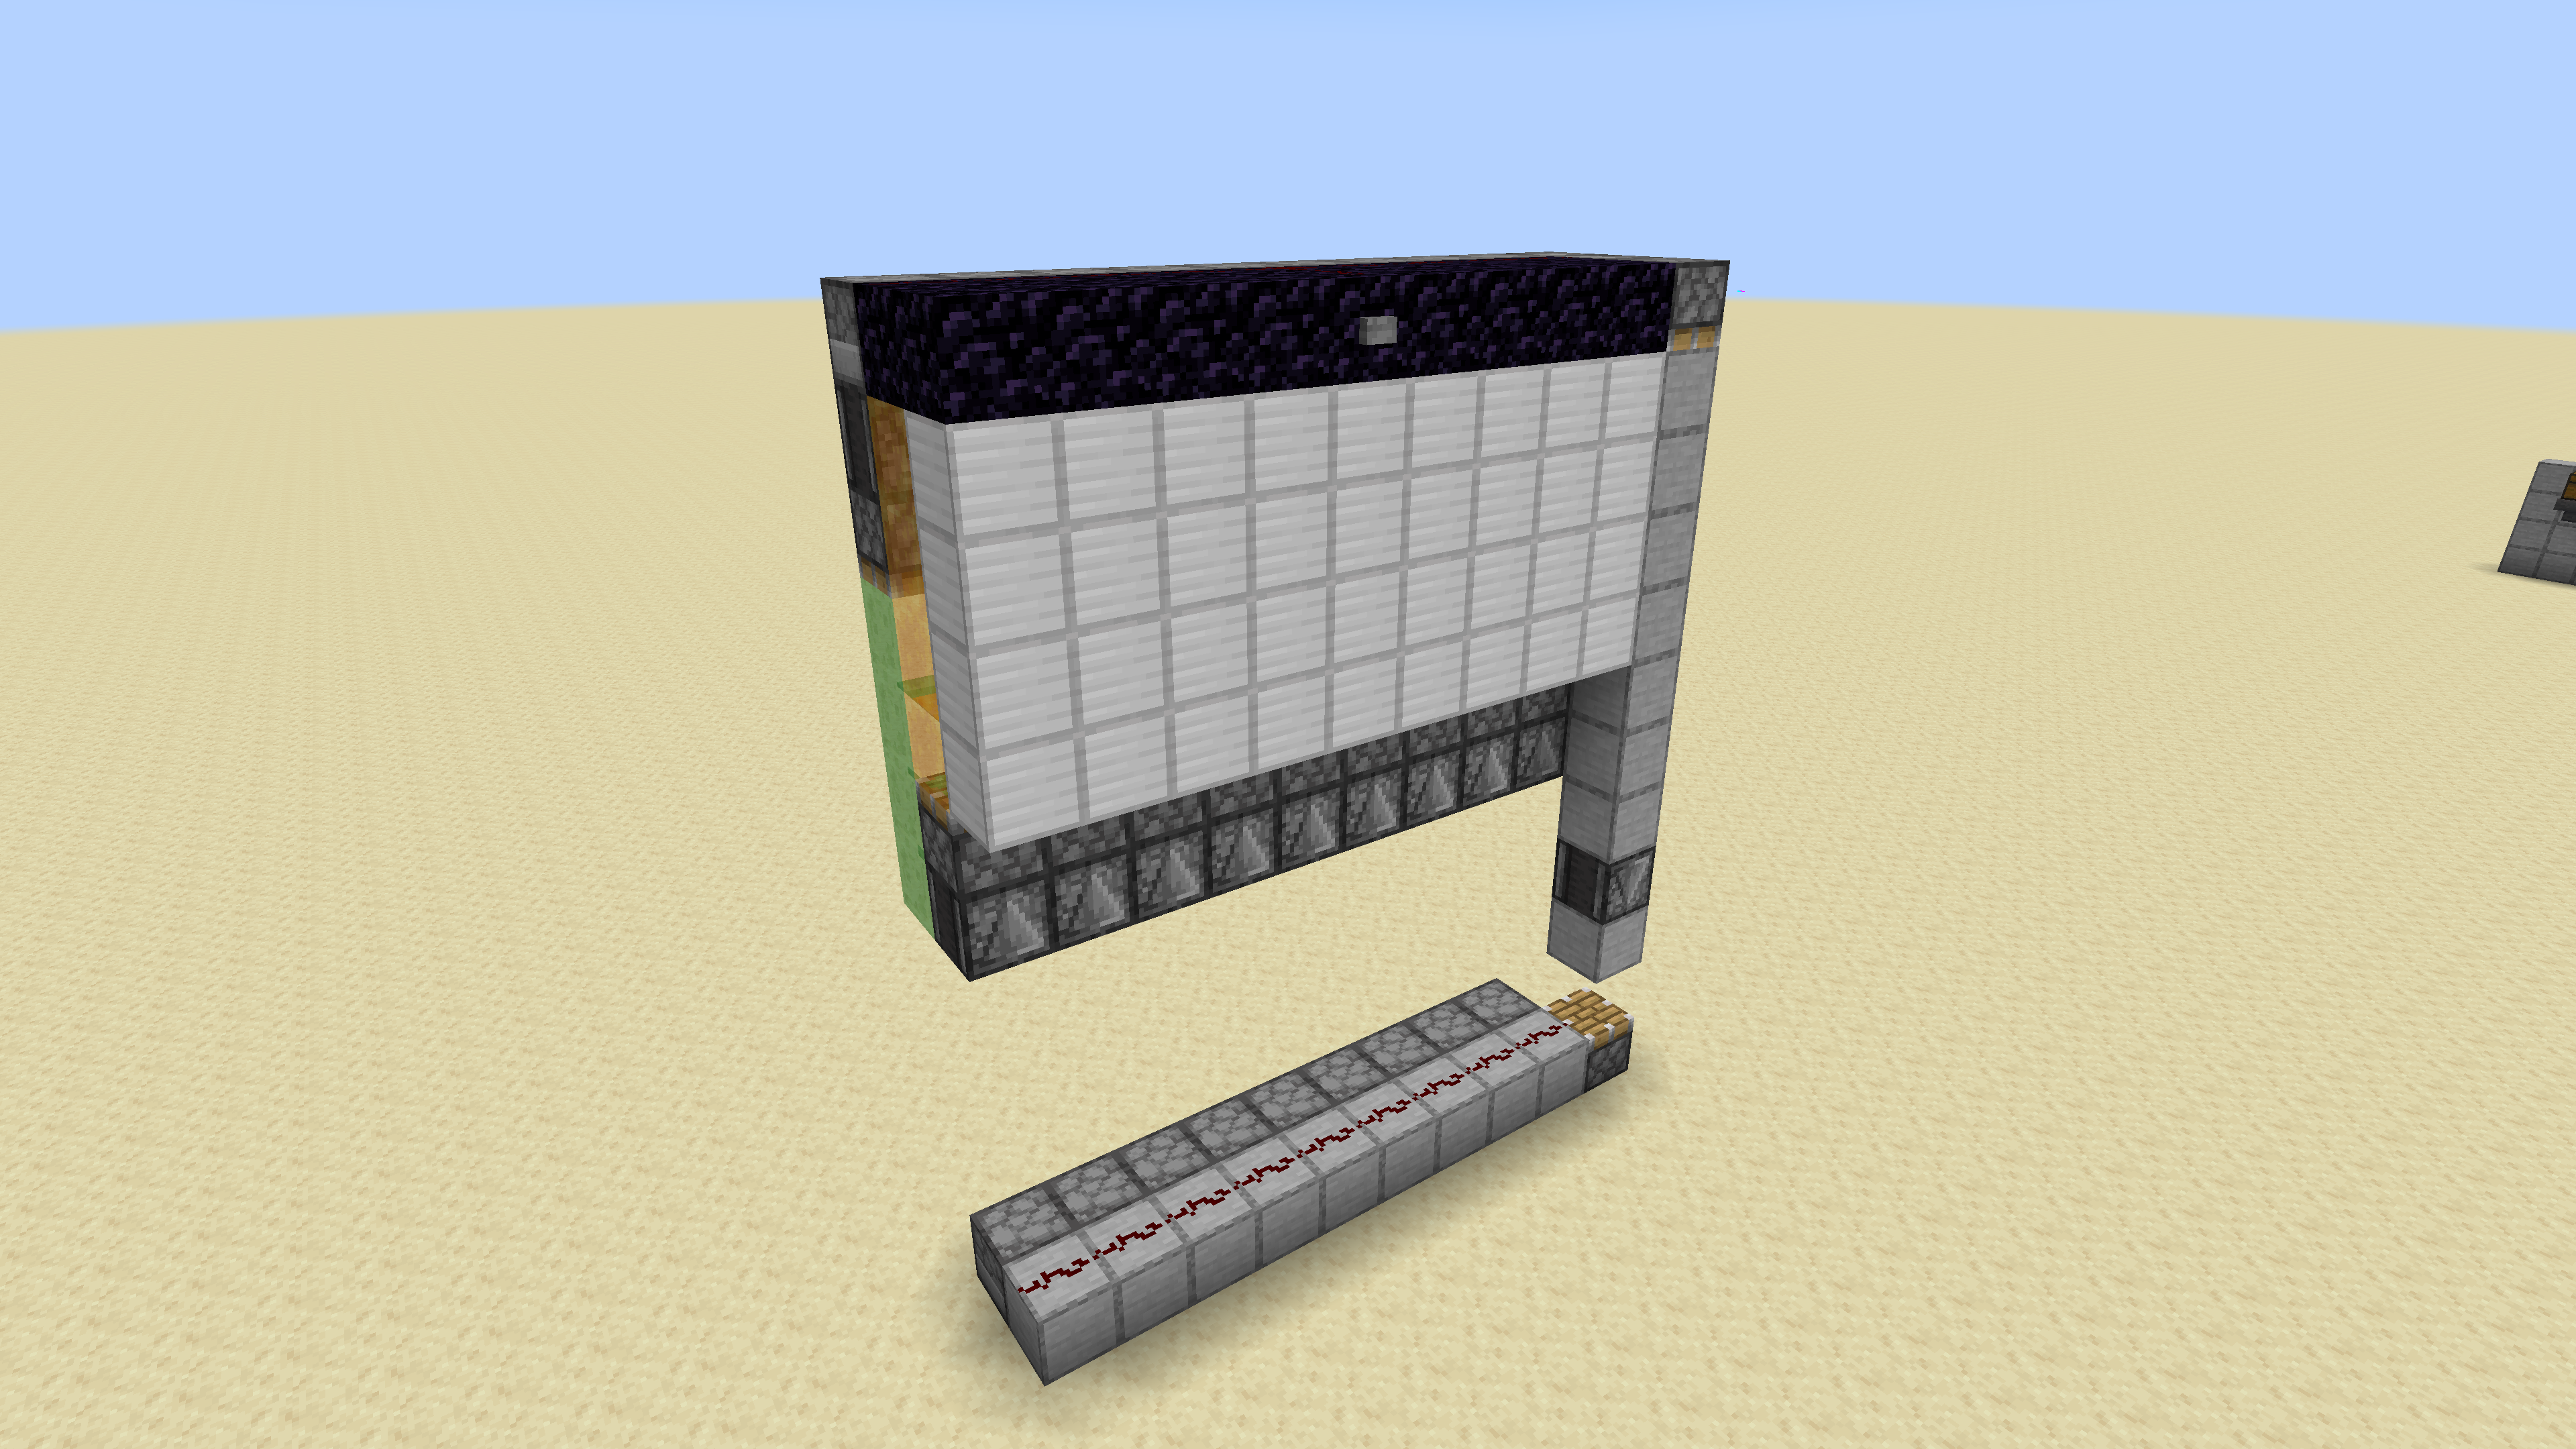 Minecract 4x9 Piston door schematic (litematic)